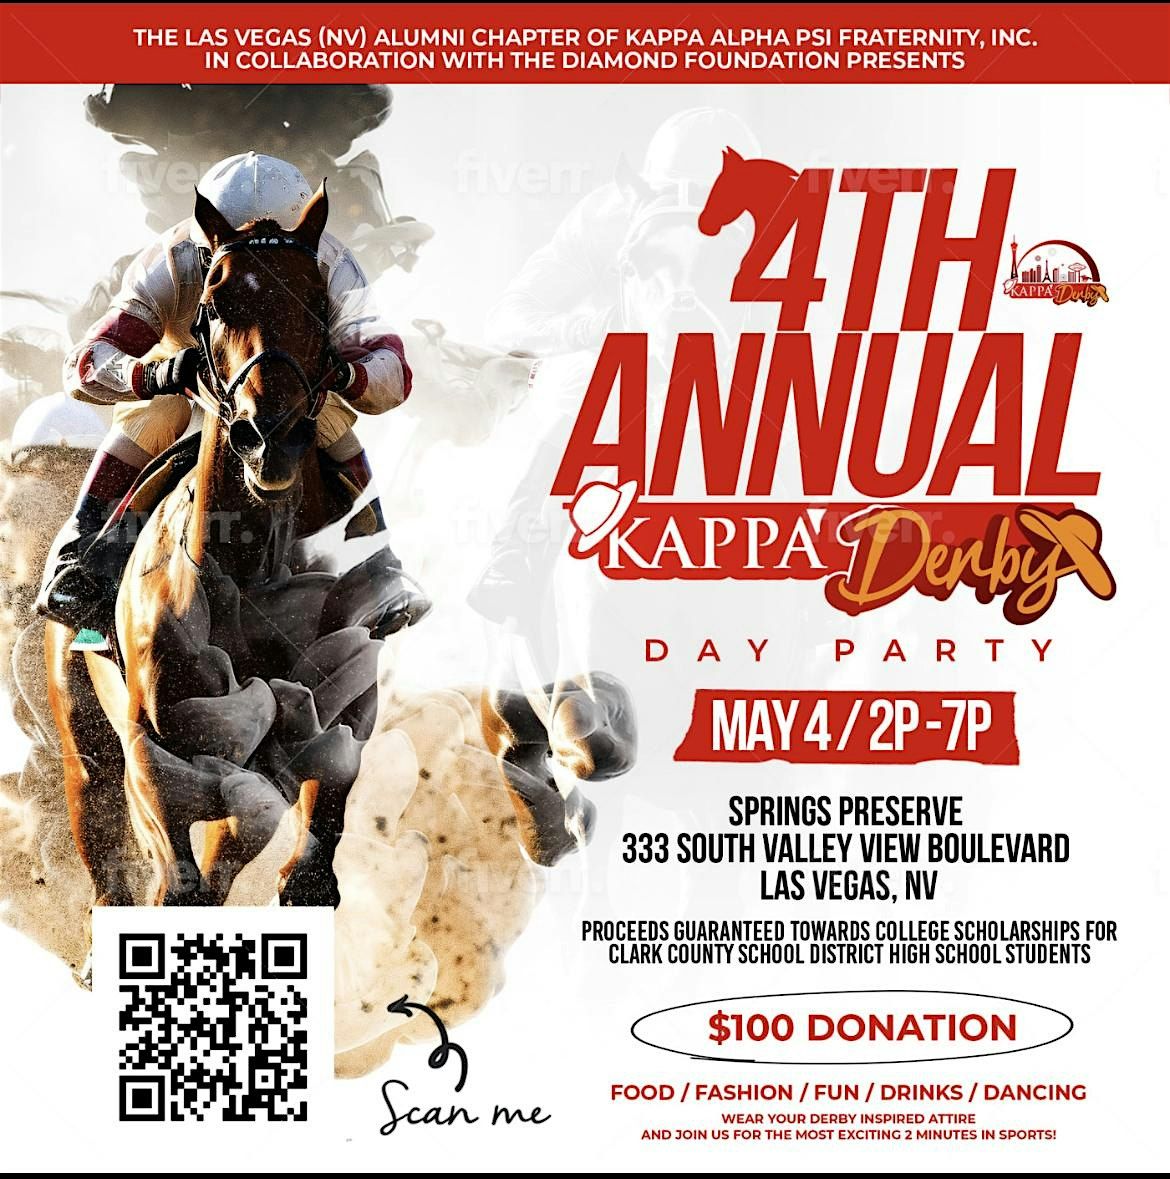 4th Annual Kappa Derby Day